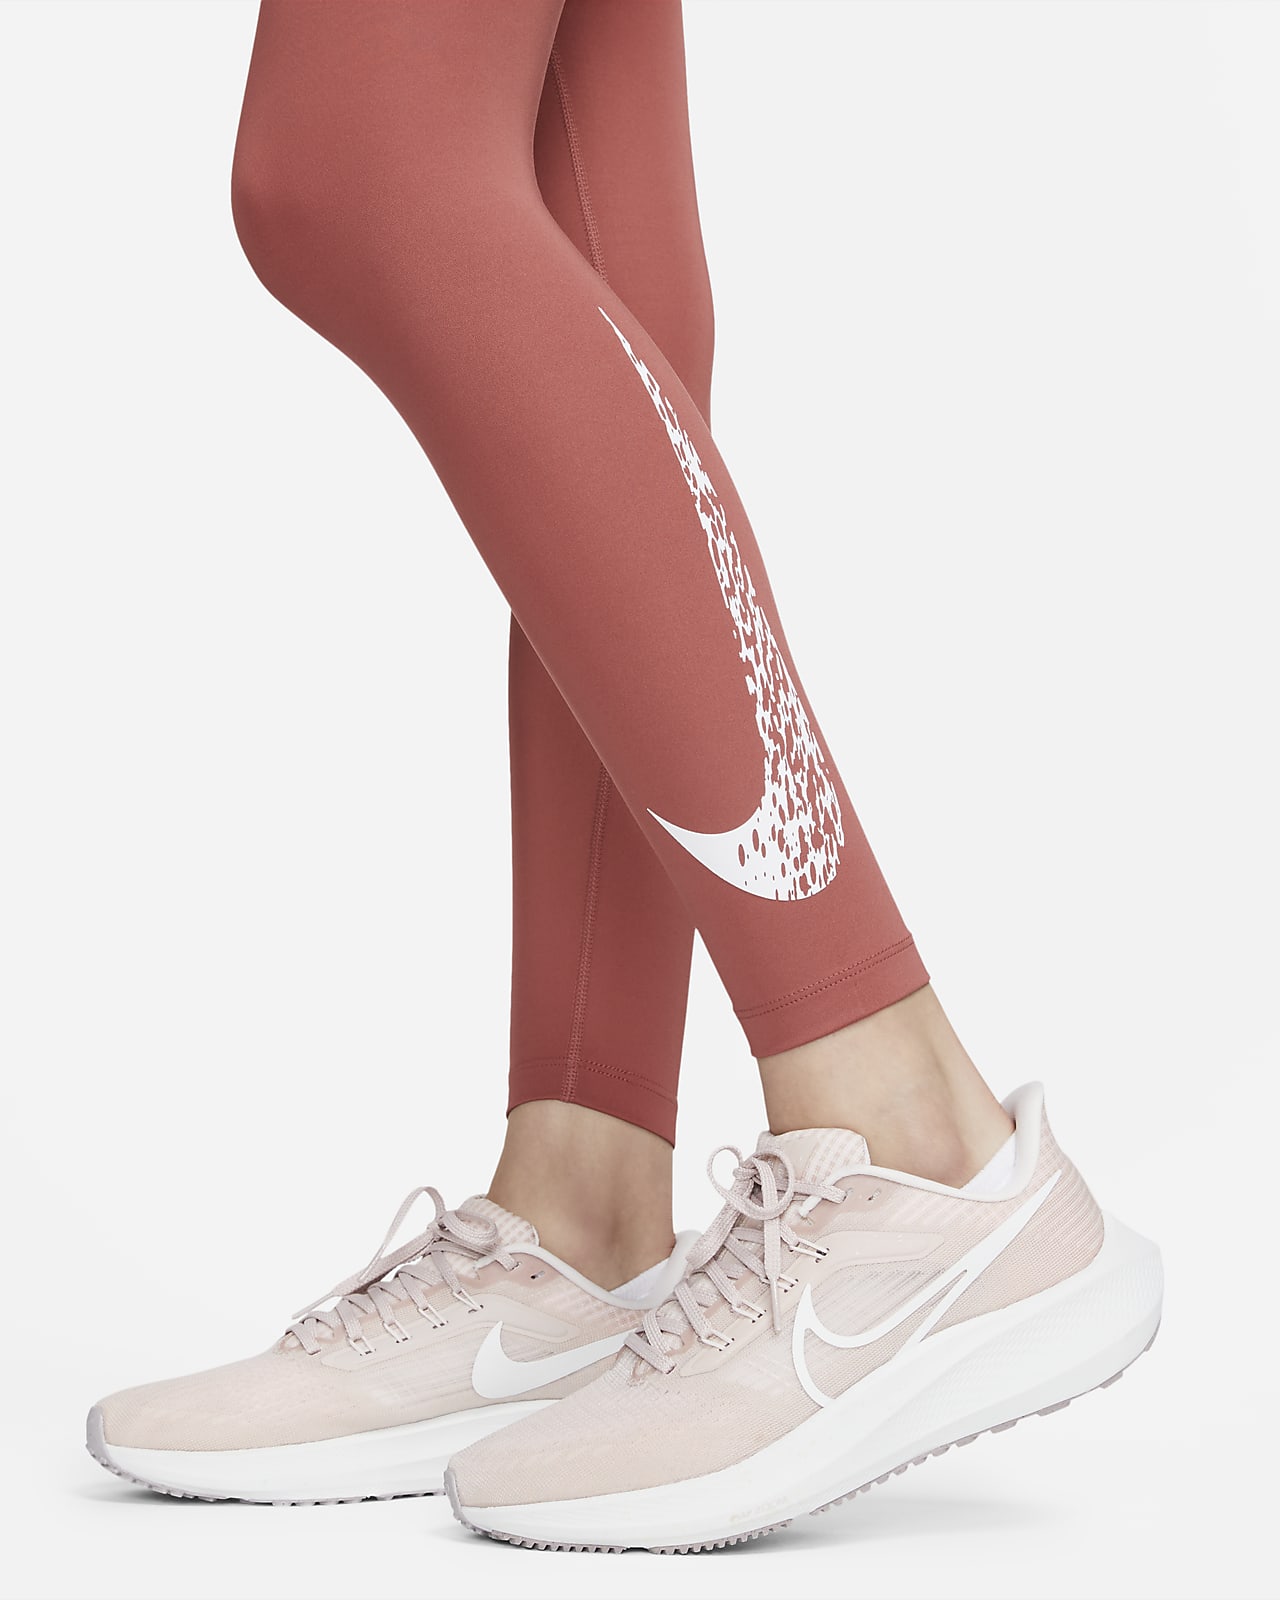 Nike Swoosh Run 7/8 Regular Waist Graphic Women's Running Tights